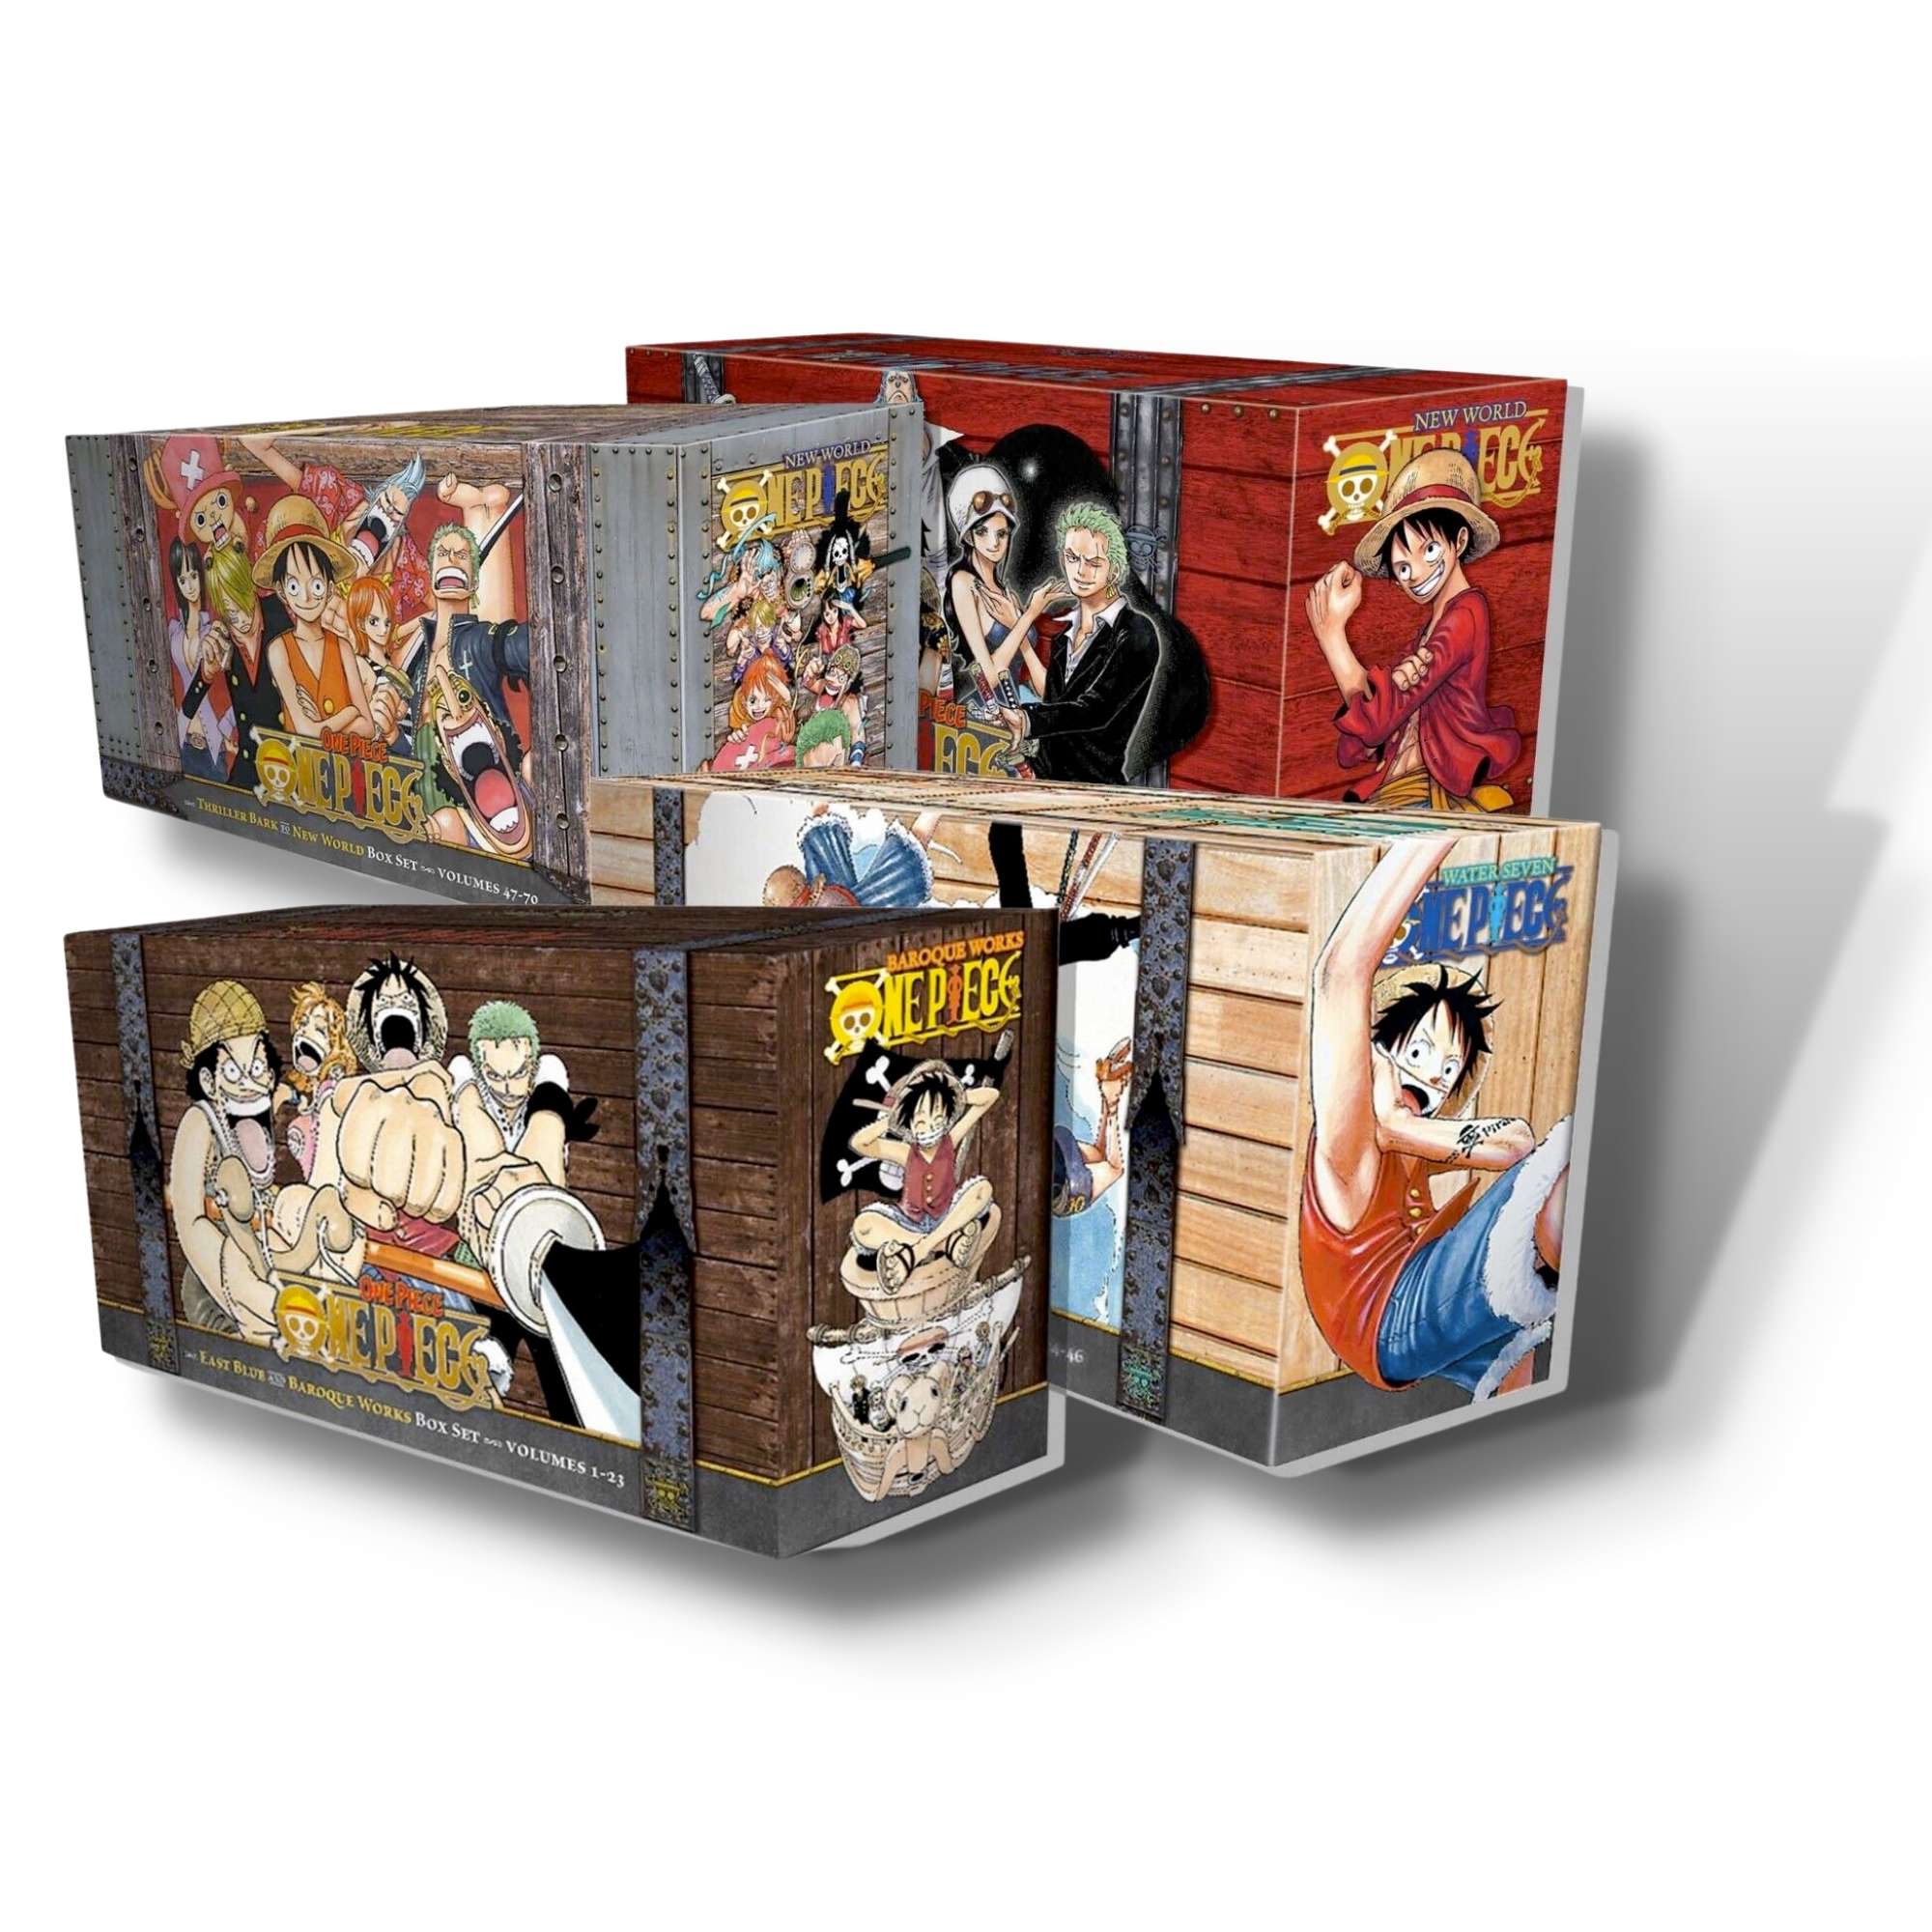 One Piece Box Set 3 : Thriller Bark to New World, Volumes 47-70 